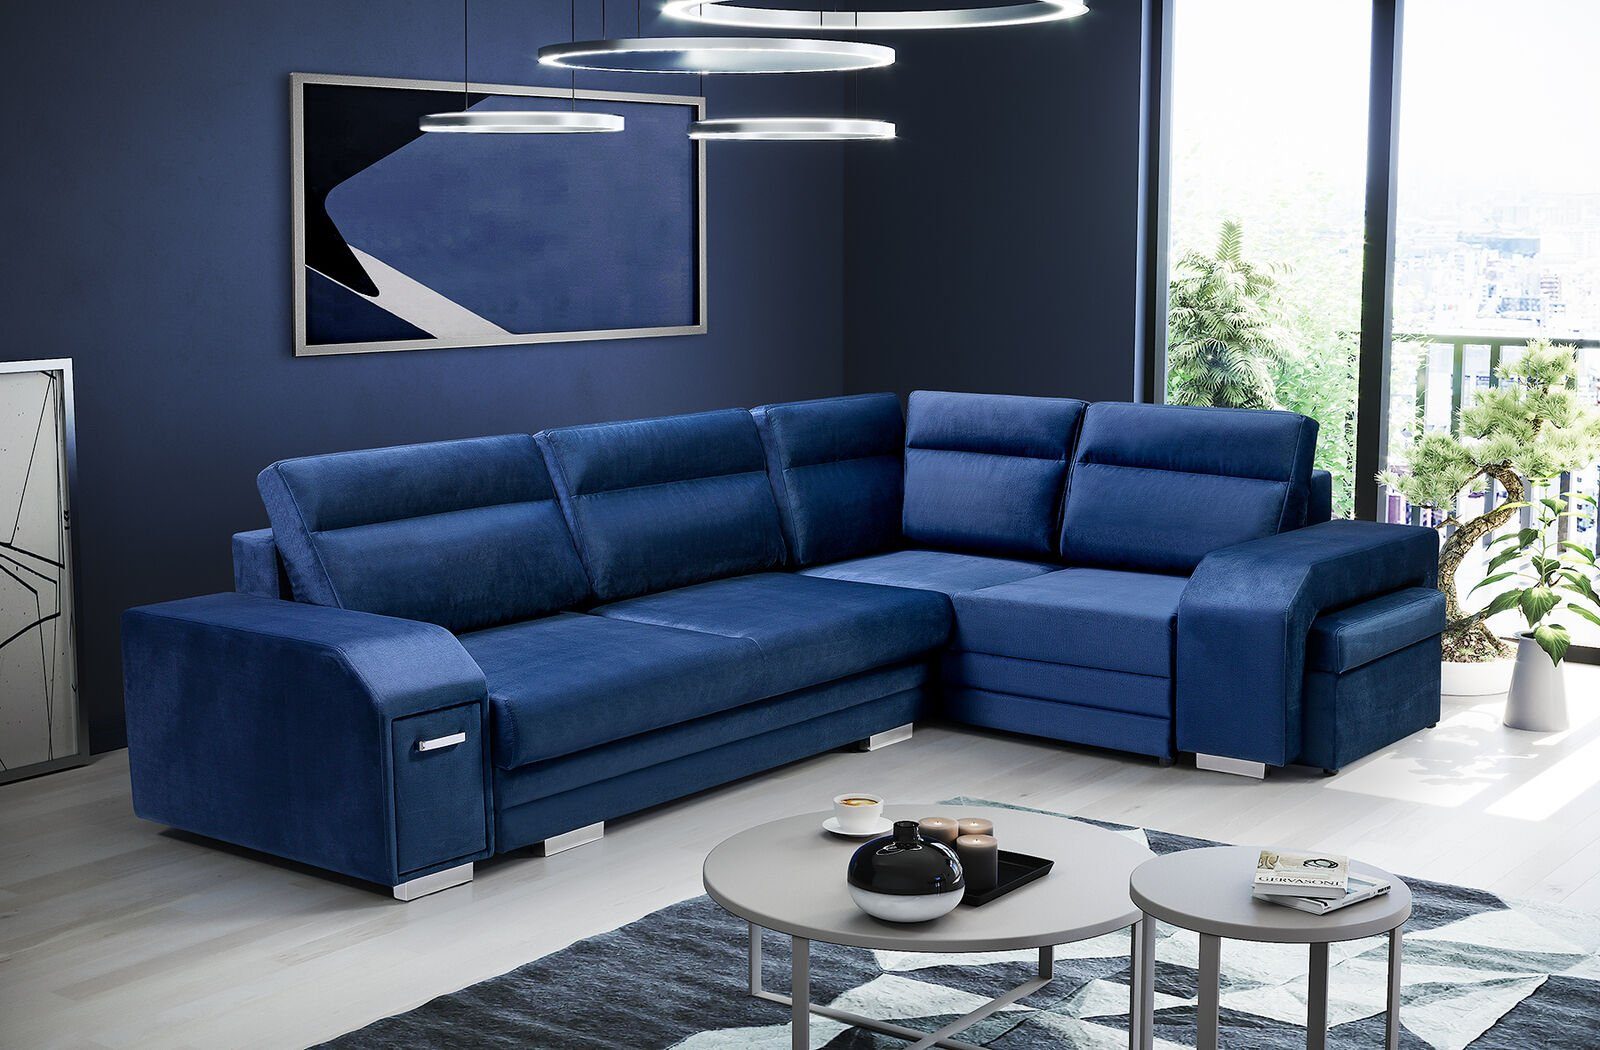 JVmoebel Ecksofa, Ecksofa Sofa Wohnlandschaft Blau Wohnzimmer Polster Eck Couch Couch